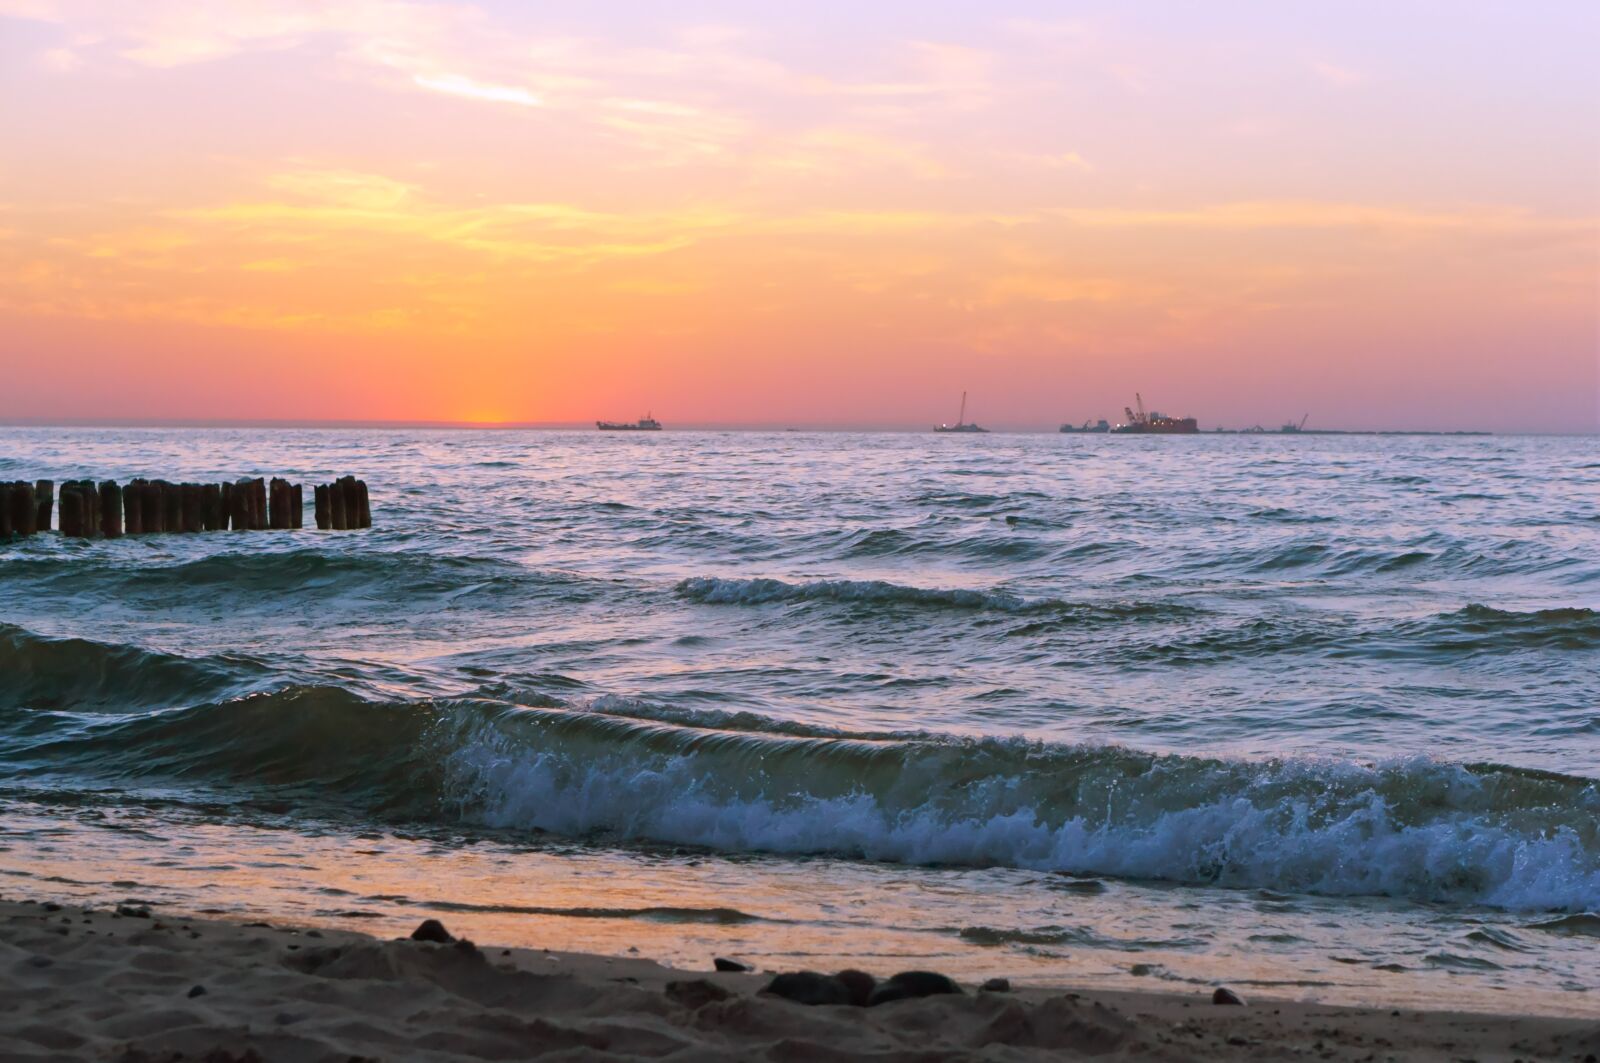 Sony Alpha NEX-3N + E 50mm F1.8 OSS sample photo. Sunset, sea, beach photography